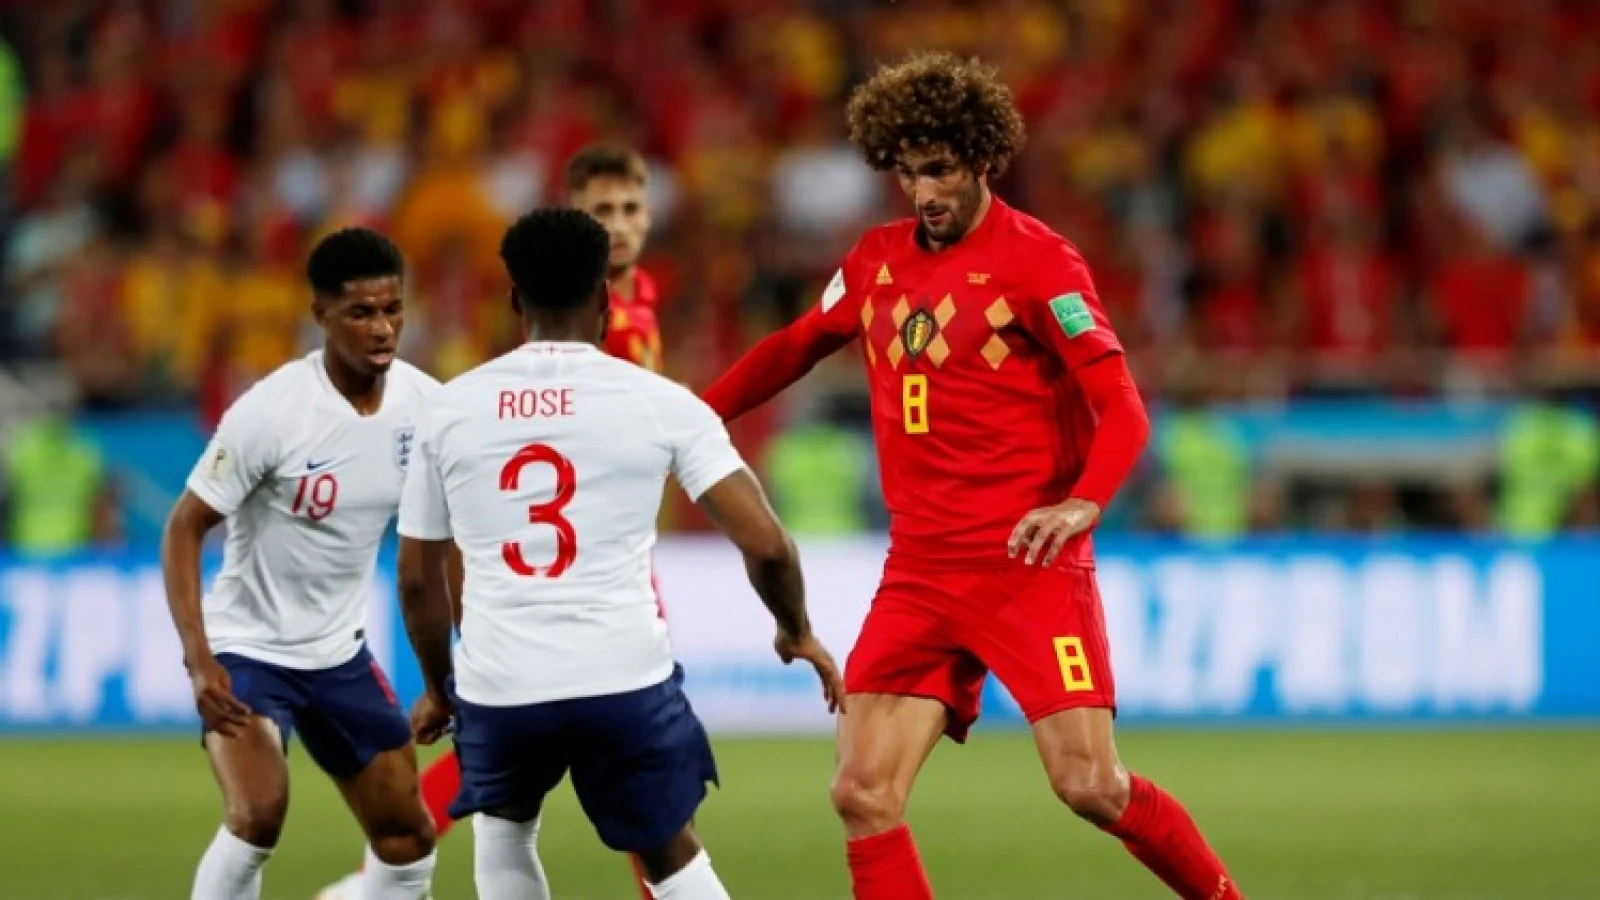 KANTINE | Dag 31 WK 2018 | België wint troostfinale van Engeland